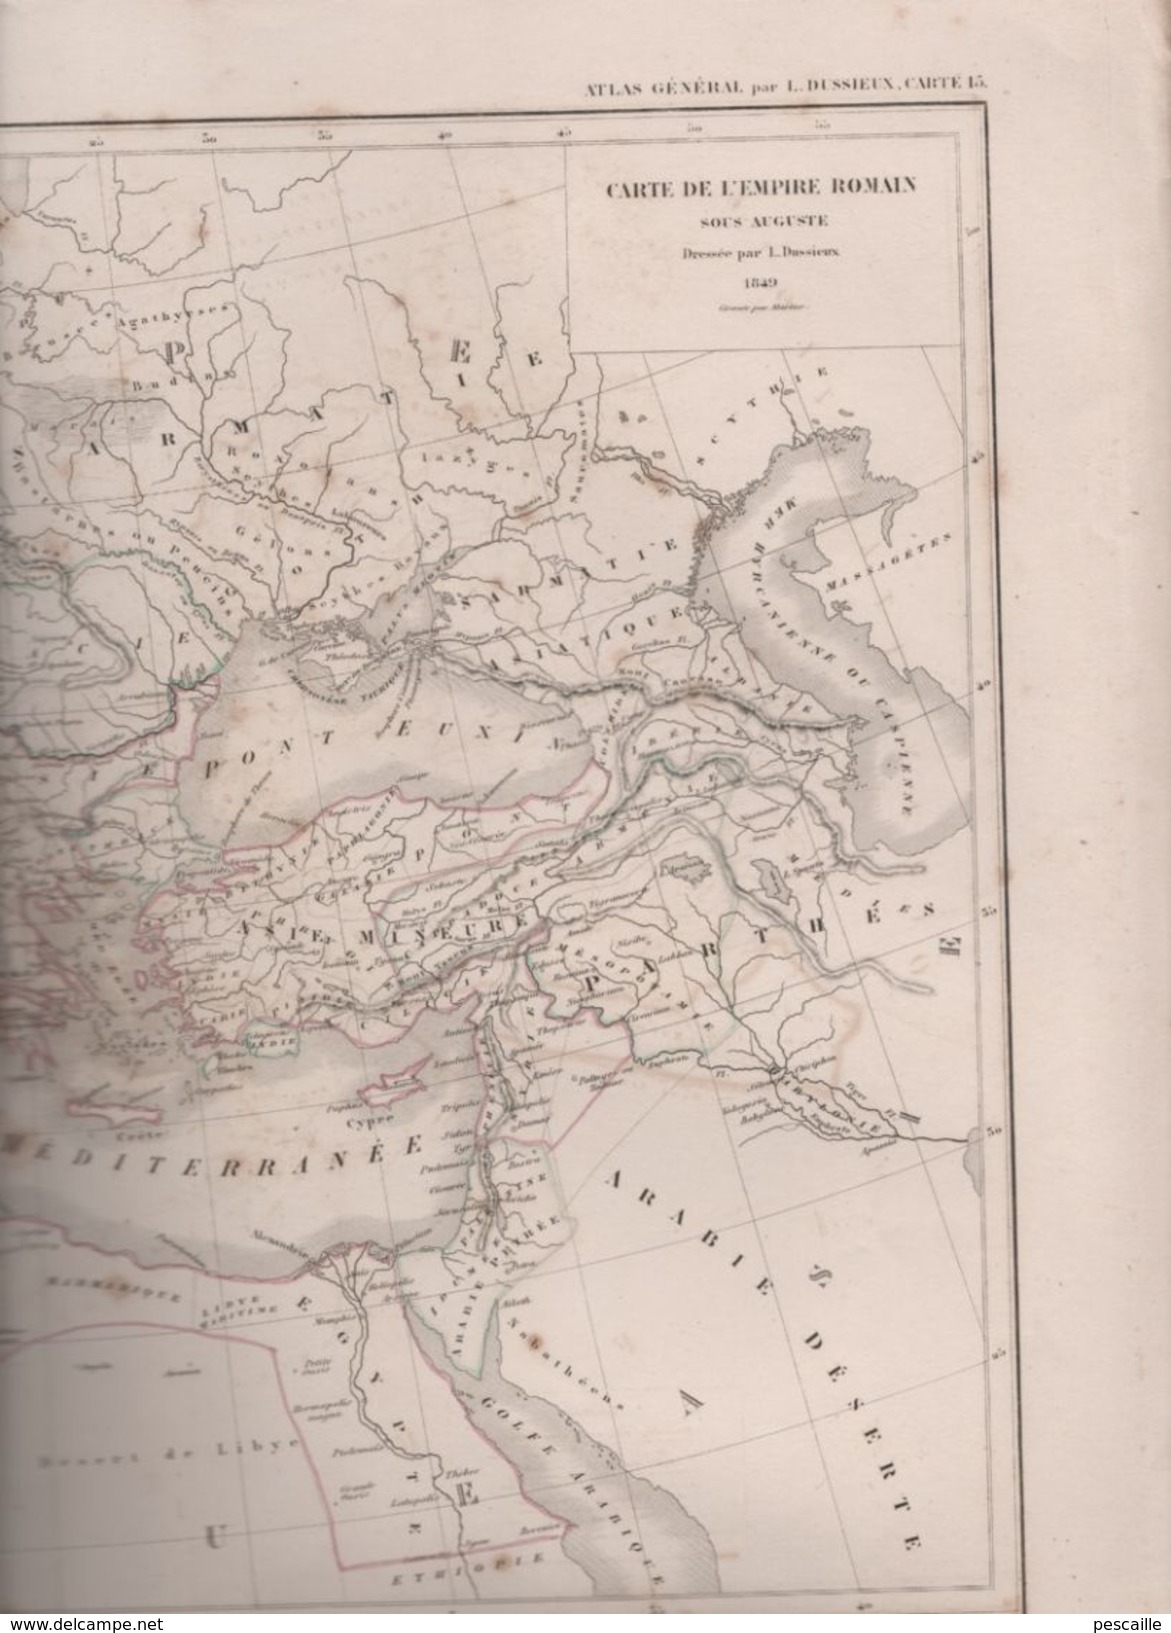 CARTE DE L'EMPIRE ROMAIN SOUS AUGUSTE DRESSEE PAR L. DUSSIEUX EN 1849 - Geographical Maps